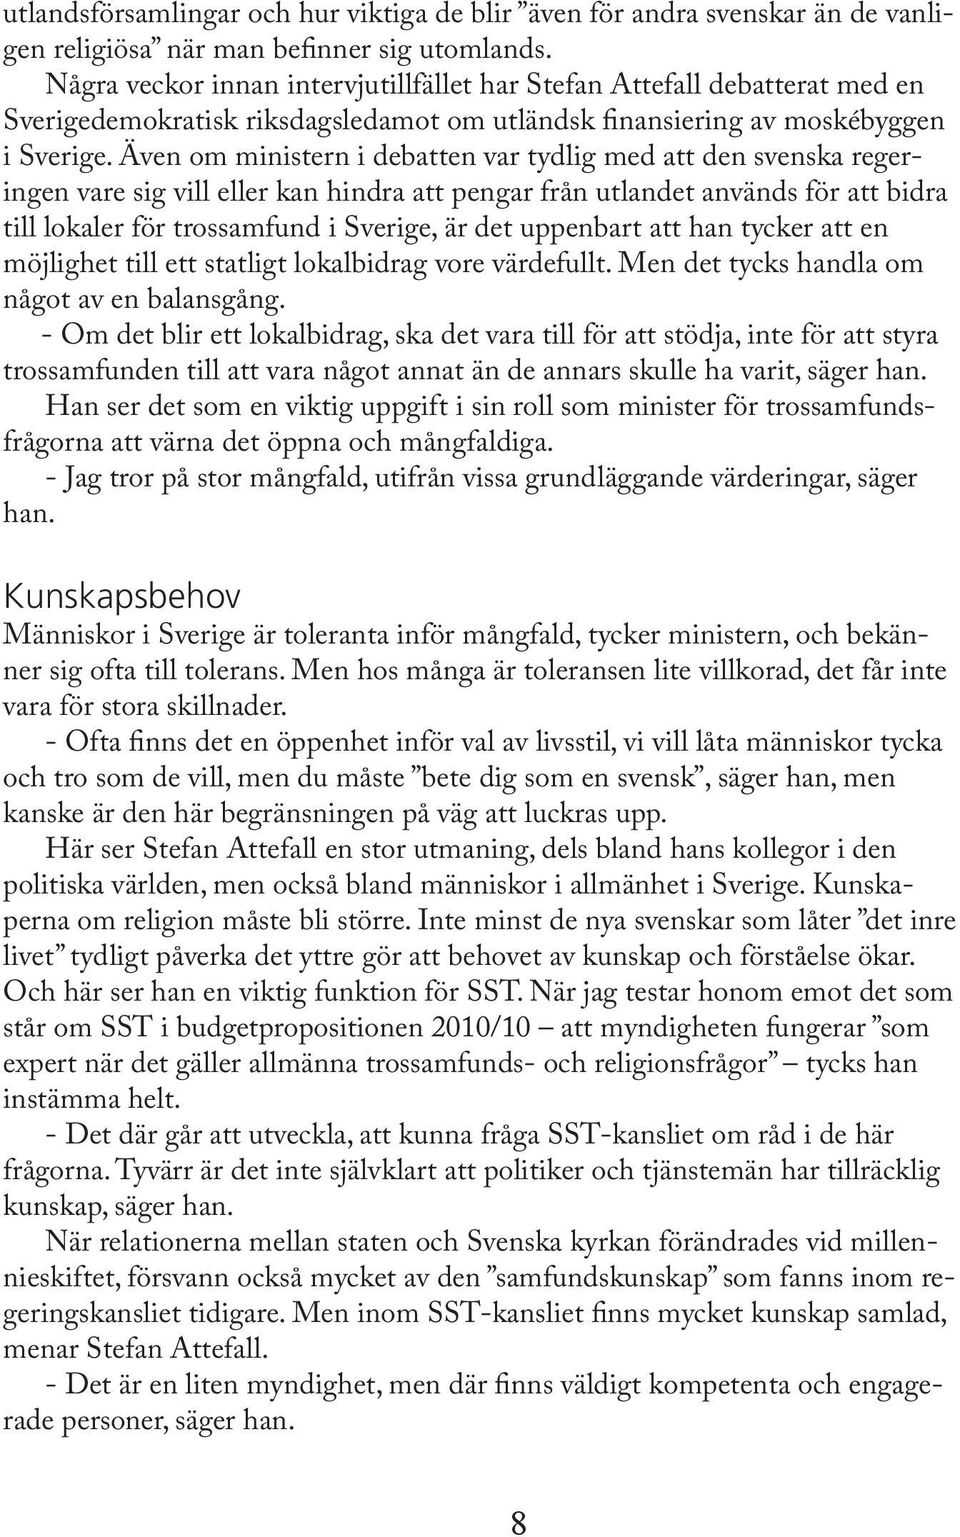 Även om ministern i debatten var tydlig med att den svenska regeringen vare sig vill eller kan hindra att pengar från utlandet används för att bidra till lokaler för trossamfund i Sverige, är det